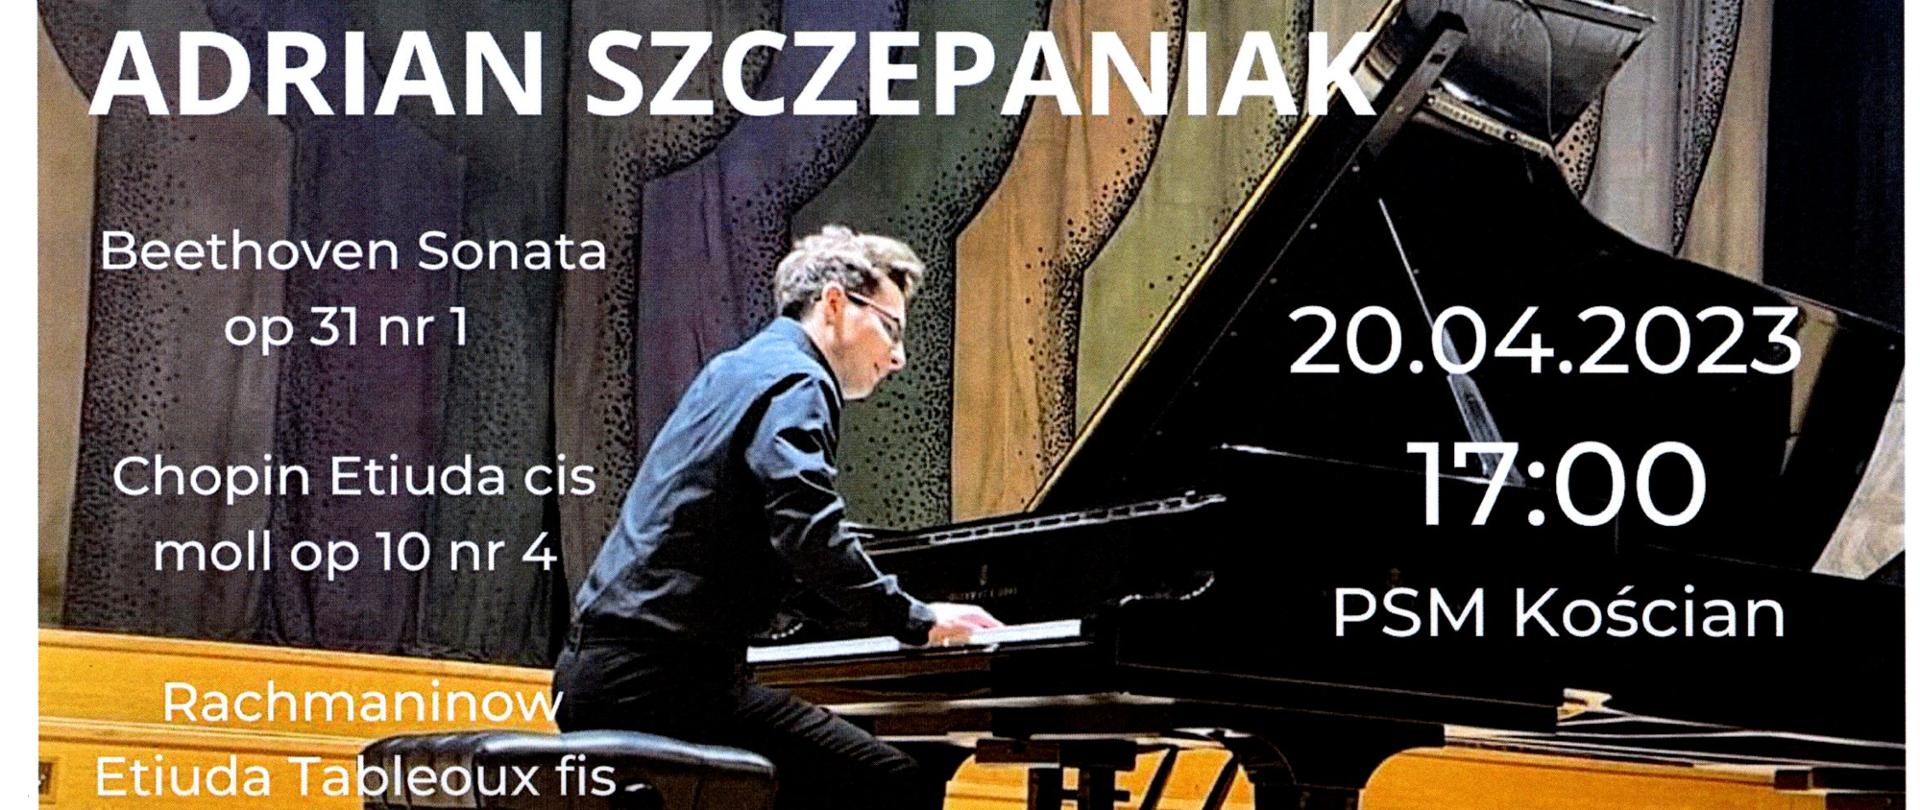 zdjęcie pianisty Adriana Szczepaniaka z informacjami o recitalu dyplomowym